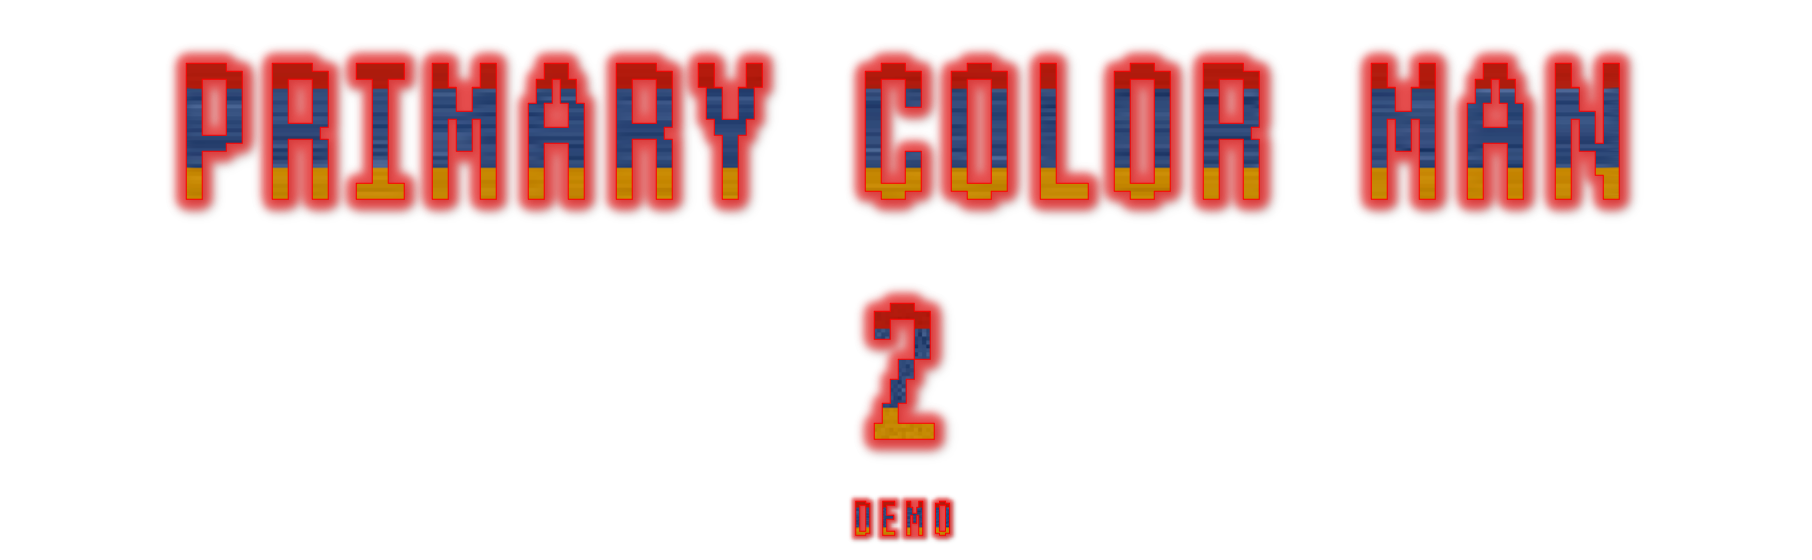 Primary Color Man 2 - Demo